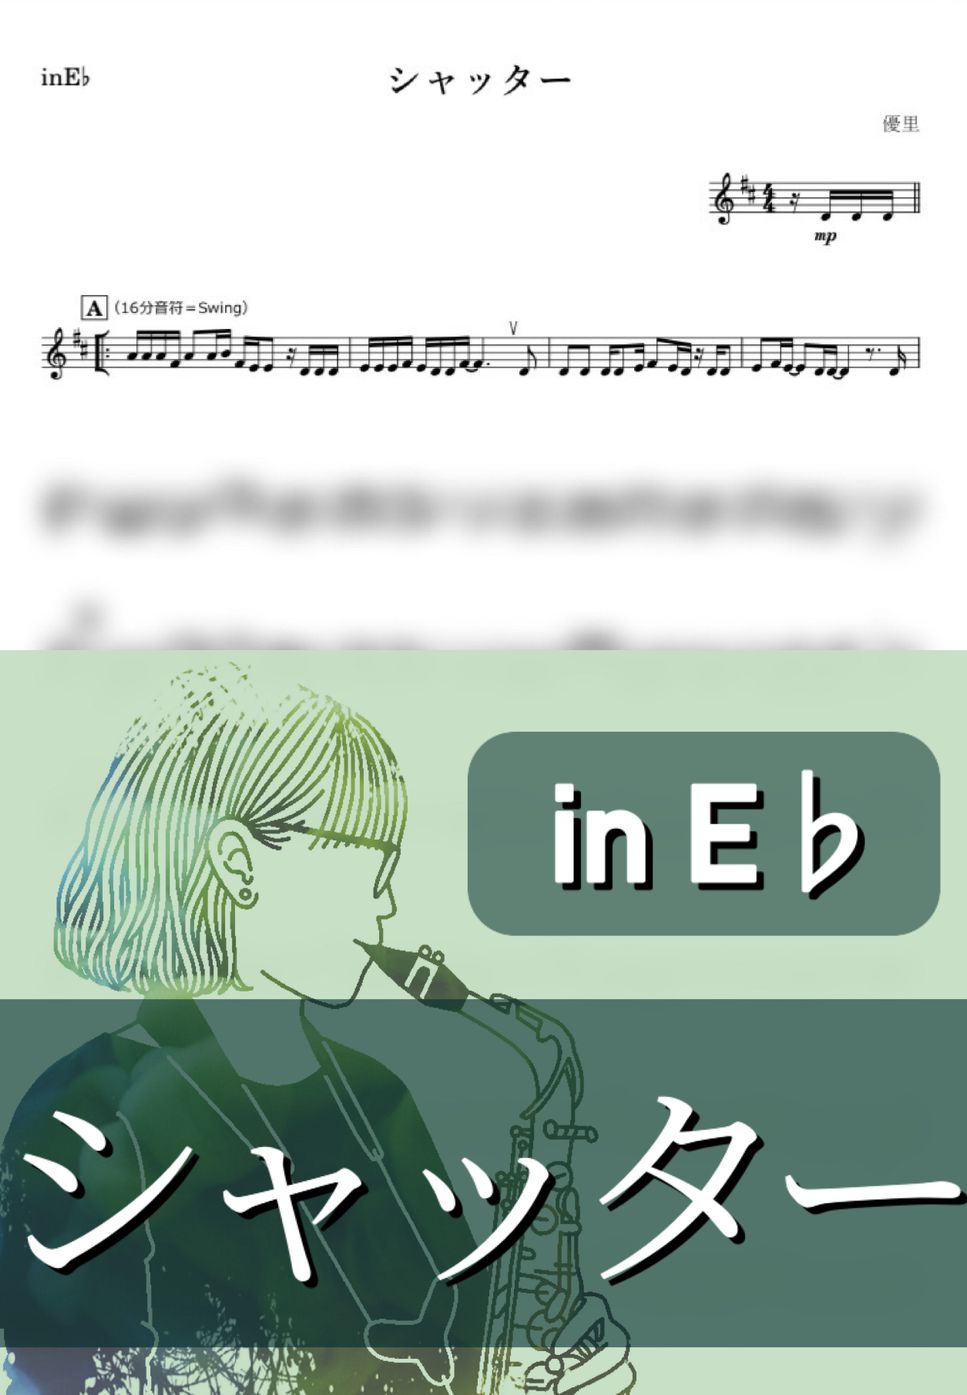 優里 - シャッター (E♭) by kanamusic